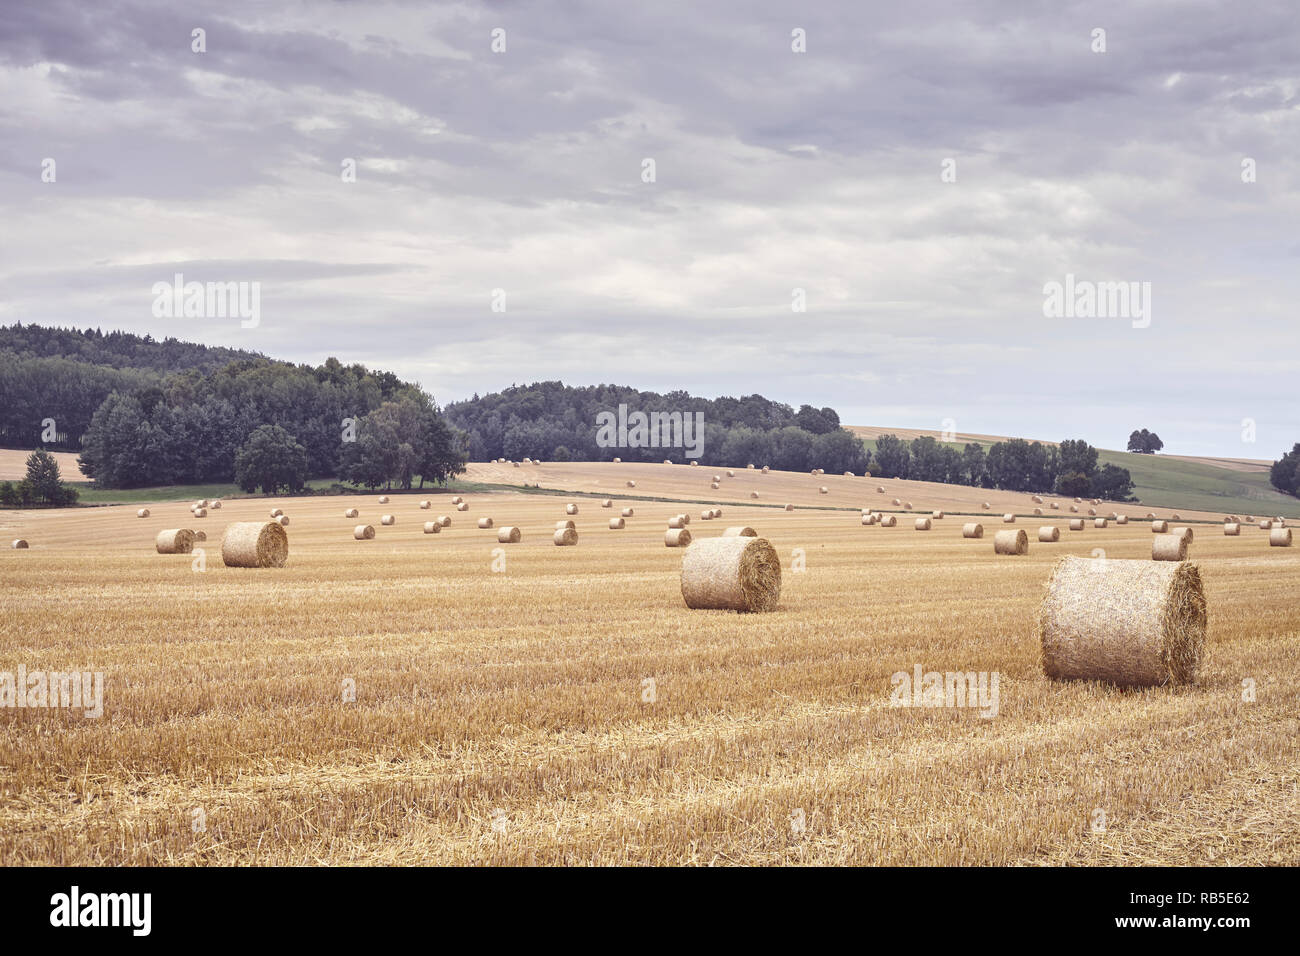 Balles rondes de paille sur un terrain à la fin de la saison des récoltes, aux tons de couleur photo. Banque D'Images